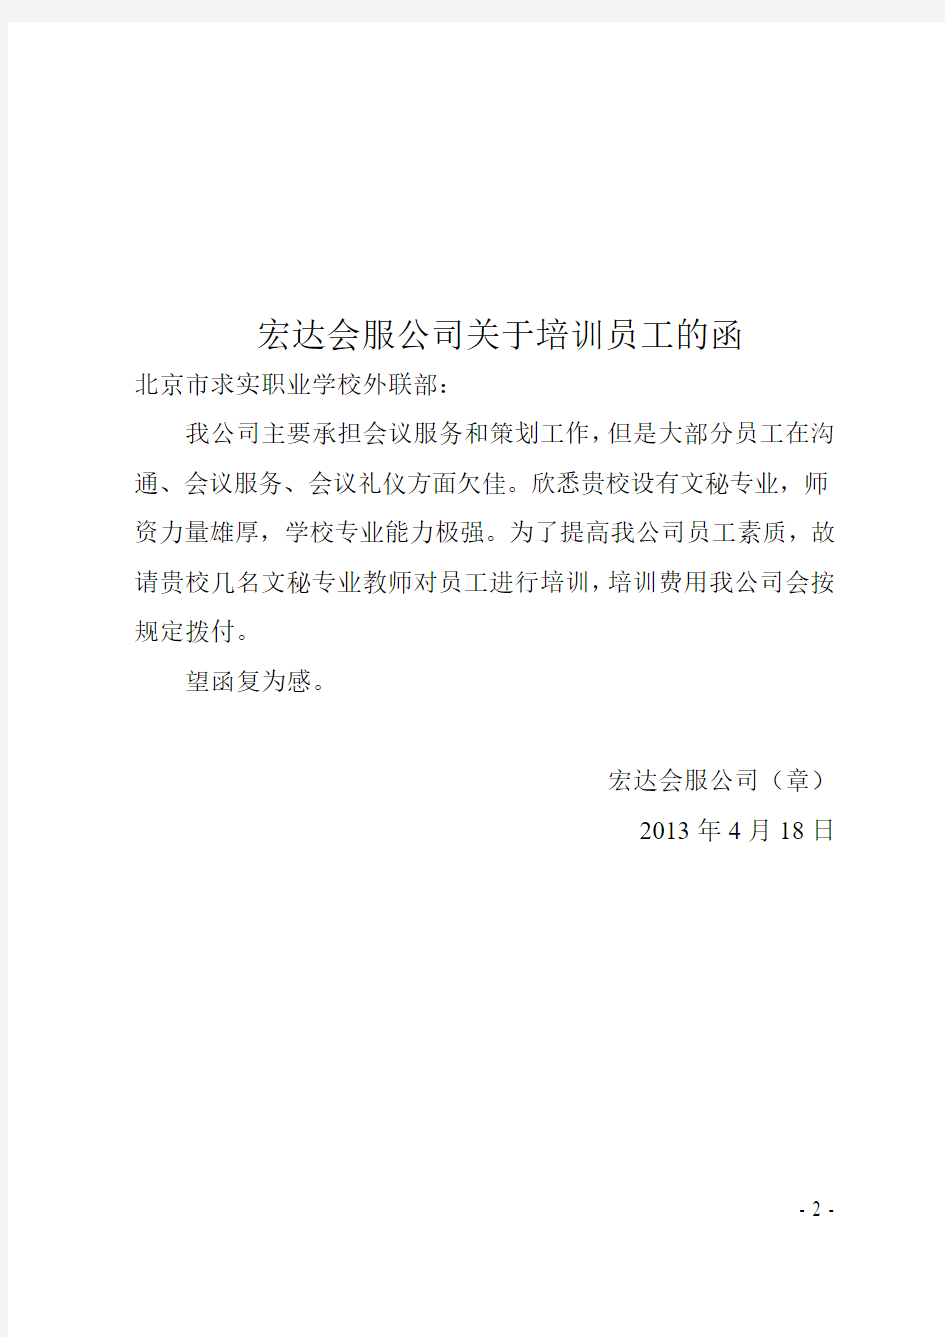 北京求实学校外联部关于同意培训员工的复函[2]